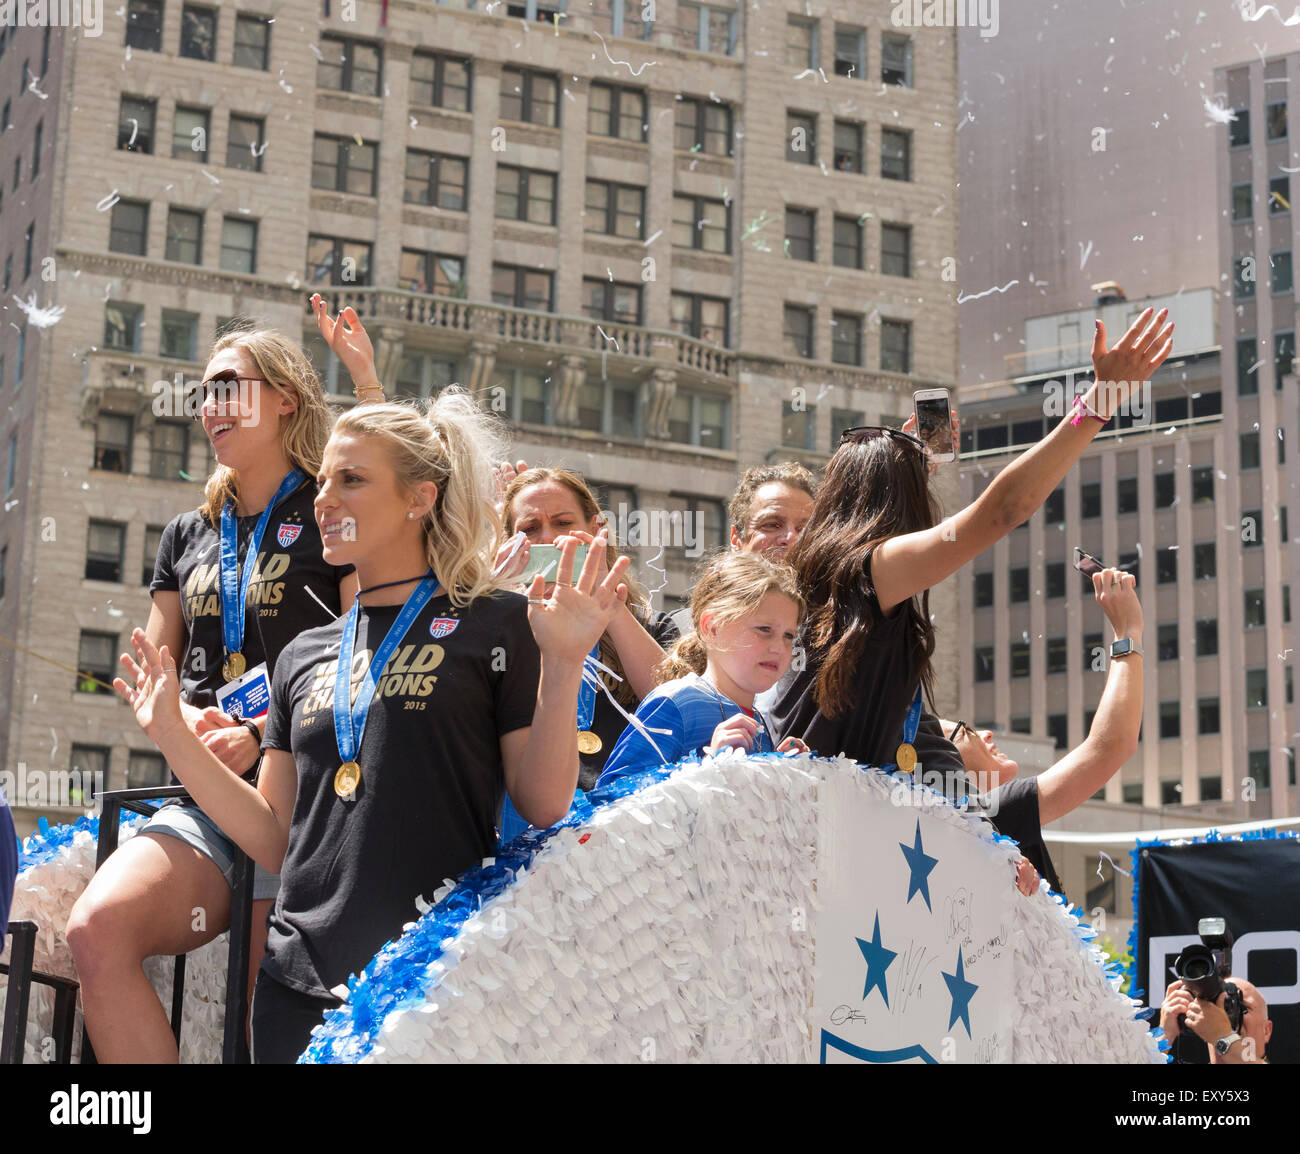 New York, NY USA - Luglio 10, 2015: membri della nazionale statunitense frequentare New York City Ticker tape Parade di Coppa del Mondo di Champions U.S. Donne Soccer team nazionale su Broadway Foto Stock